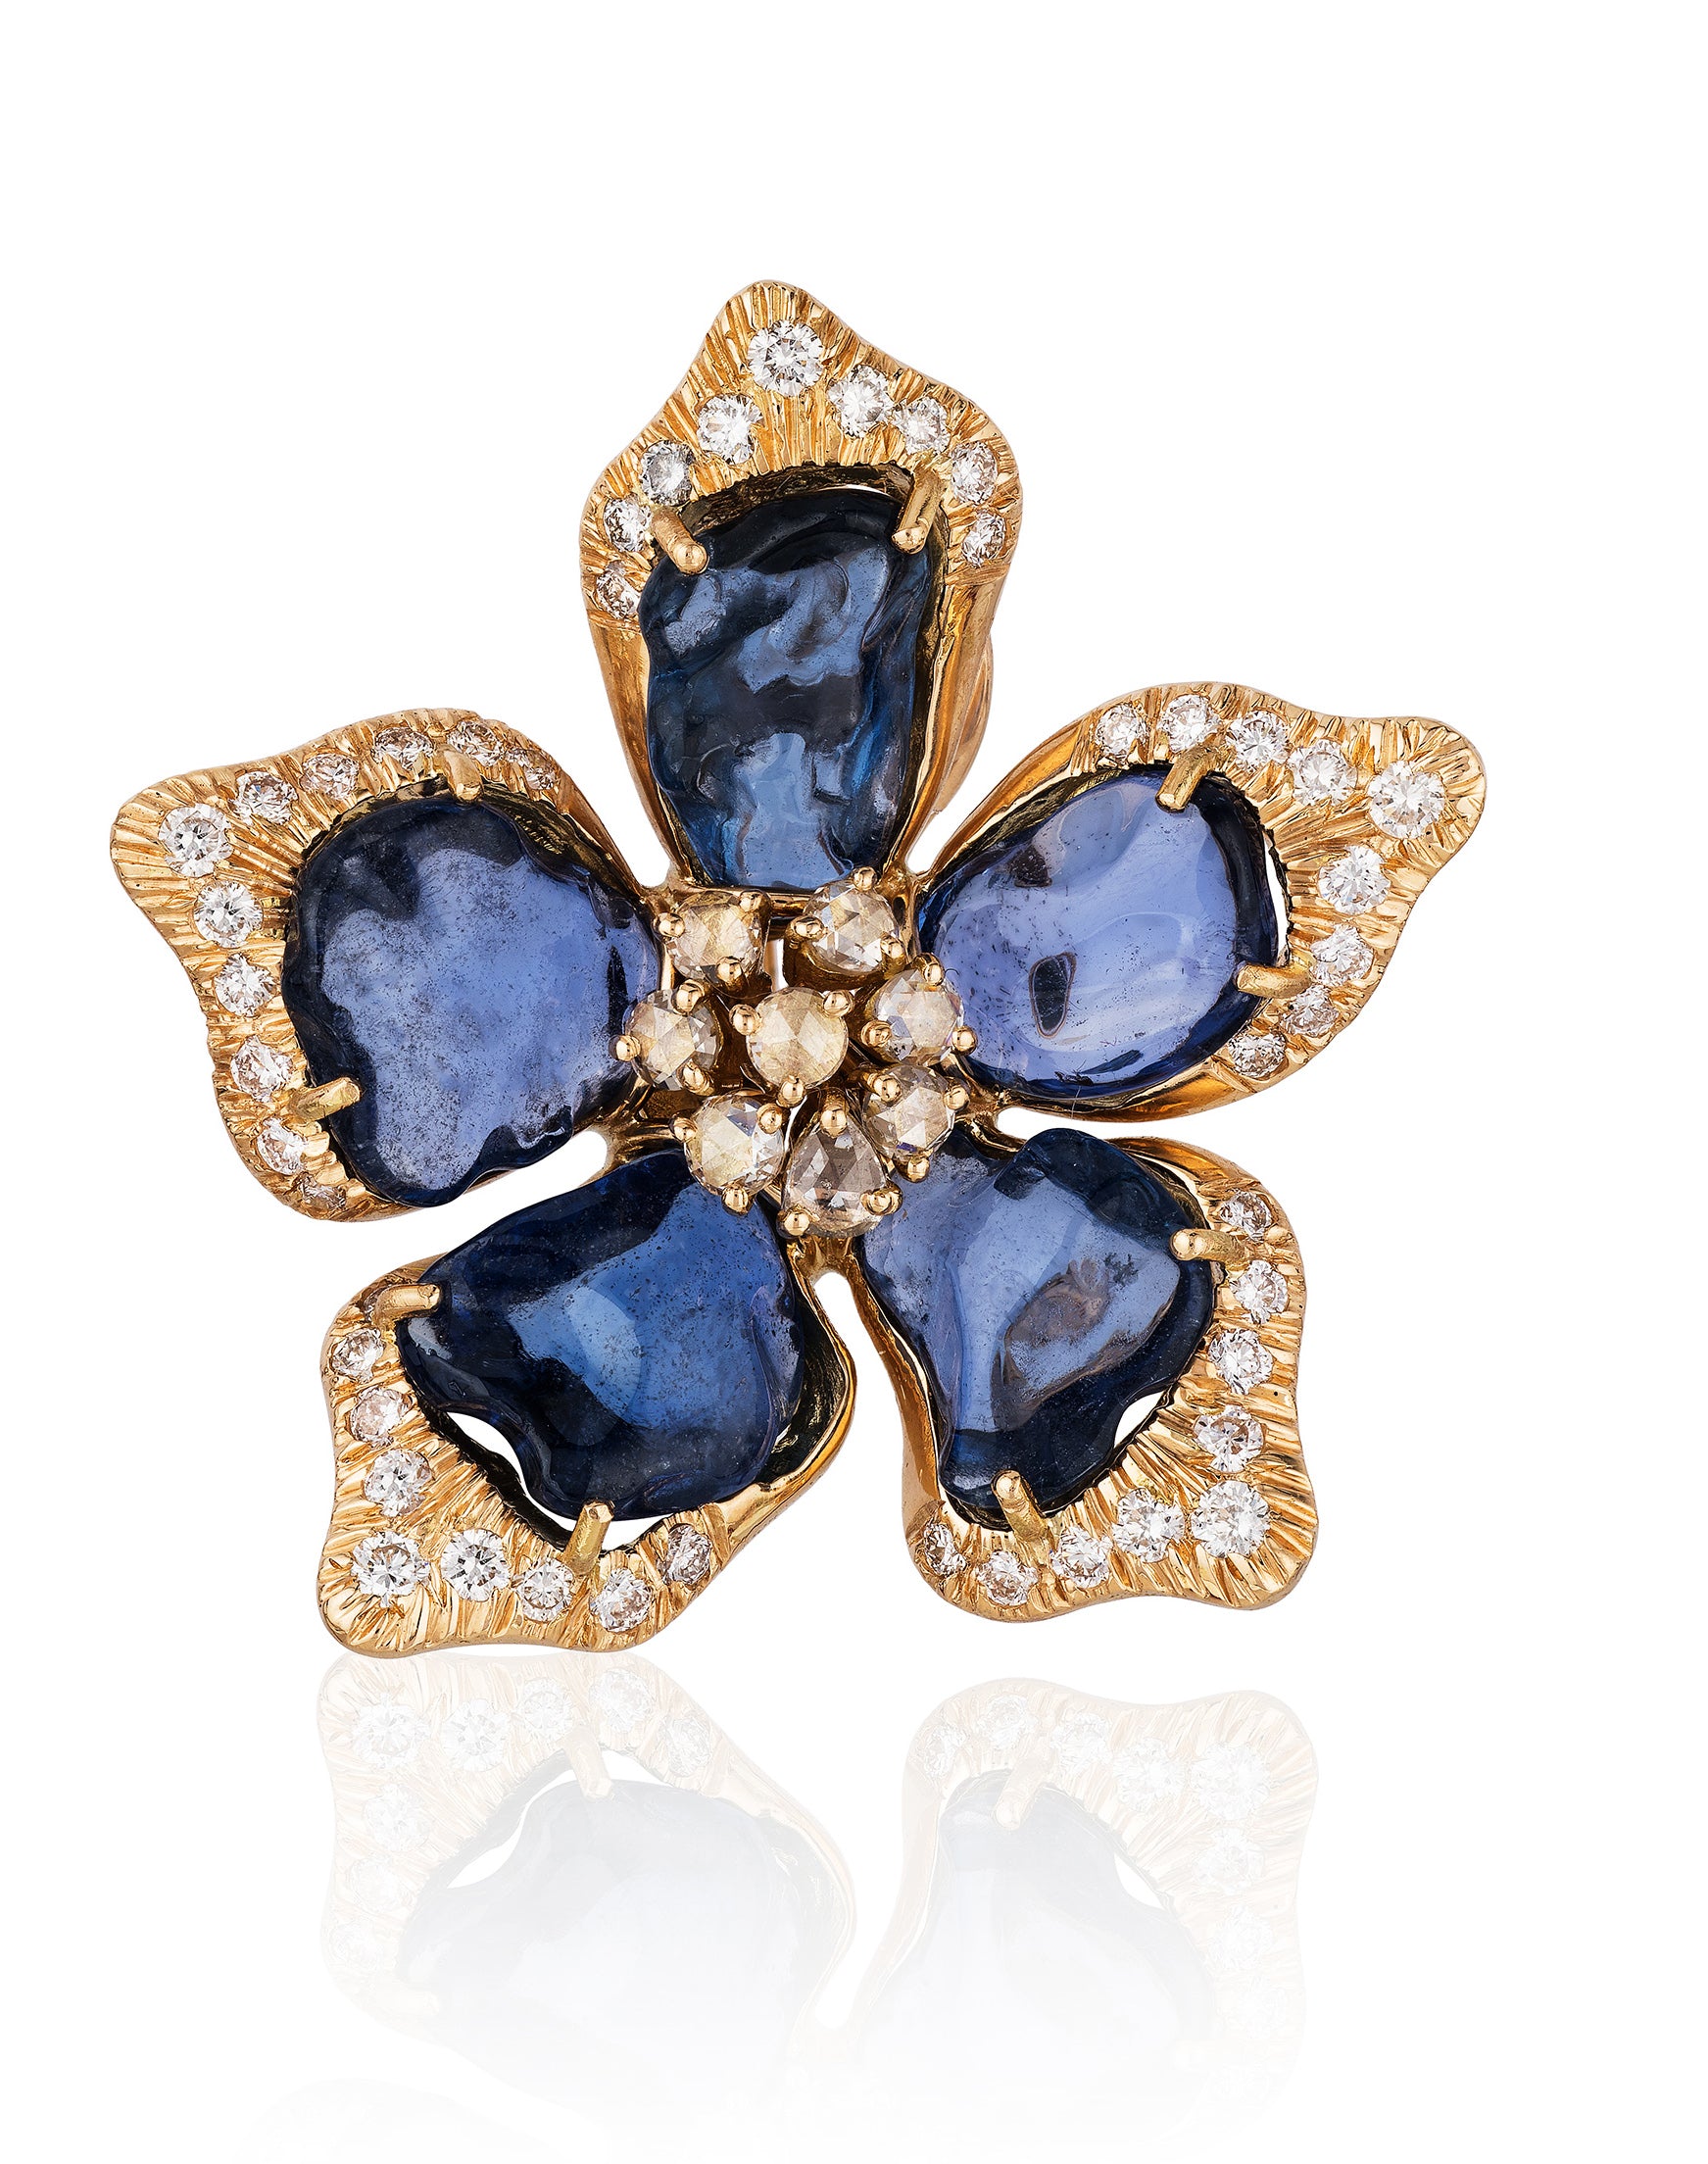 18 karat gold, flower shape Sapphire earrings with Diamonds by fine jewelry designer Goshwara18k gold, flower sapphire earrings with Diamonds by fine jewelry designer Goshwara